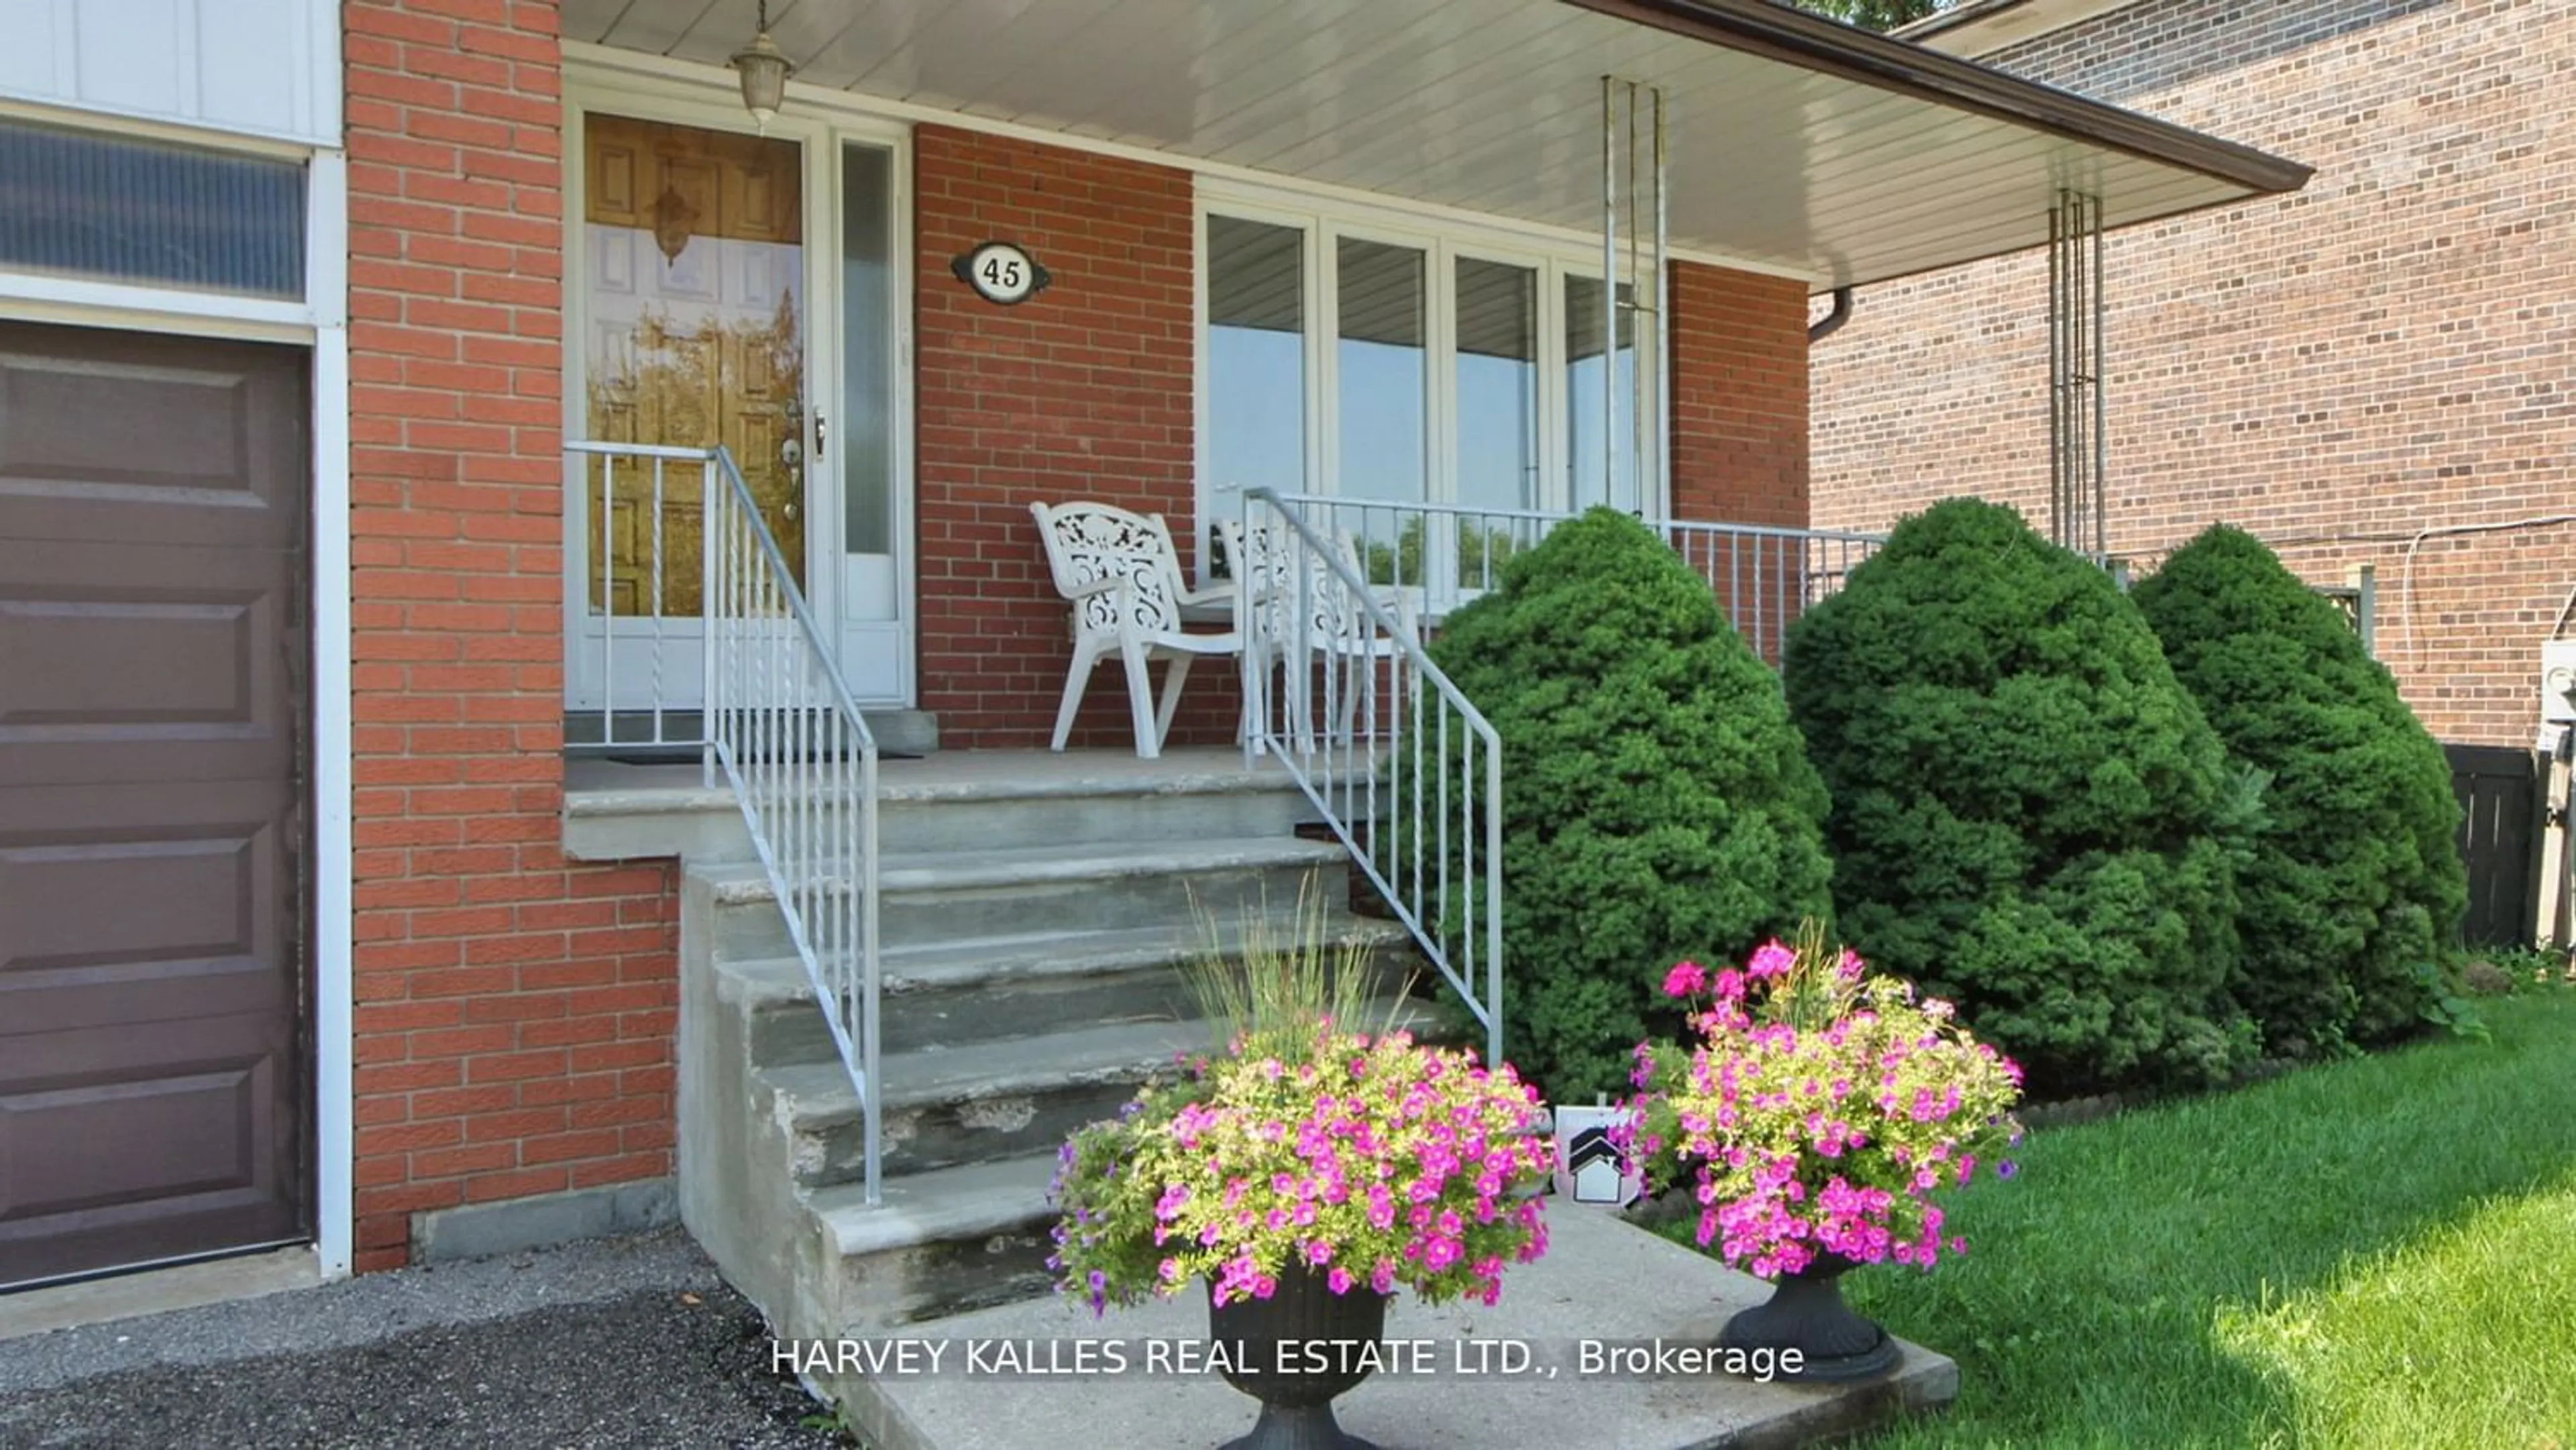 Home with brick exterior material for 45 Sandale Gdns, Toronto Ontario M3H 3V3